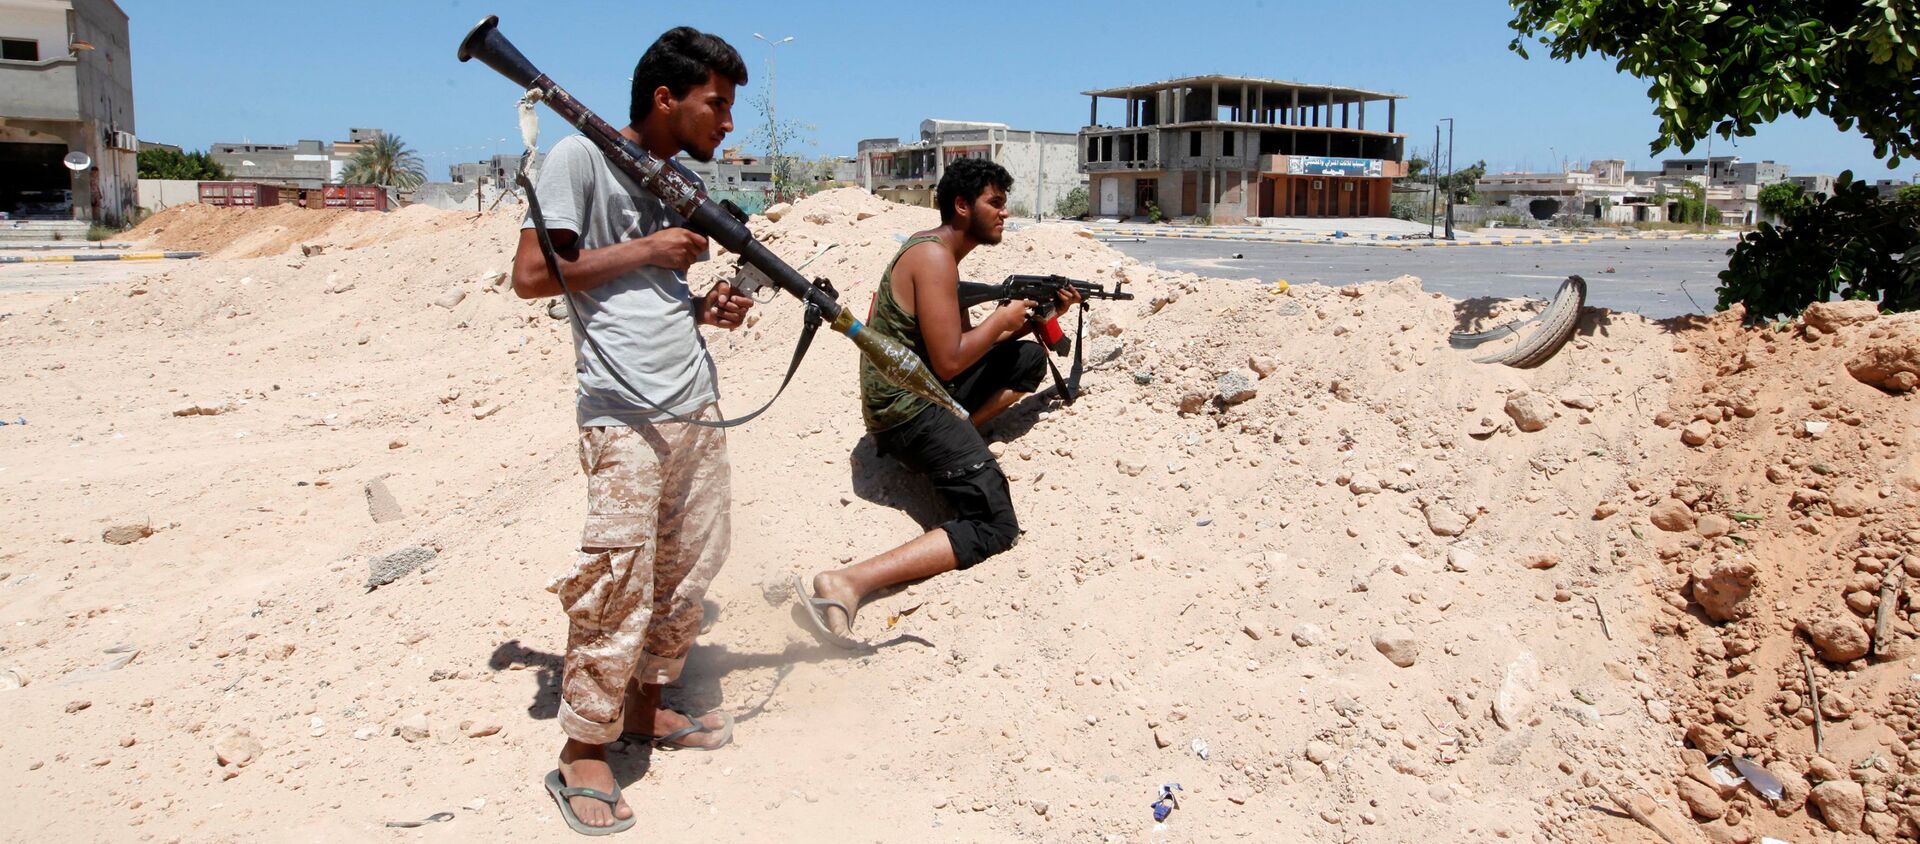 ليبيا - أفراد القوات الليبية خلال تواجدهم في مواقع المواجهة ضد تنظيم داعش في مدينة سرت، 15 أغسطس/ آب 2016 - سبوتنيك عربي, 1920, 28.02.2021